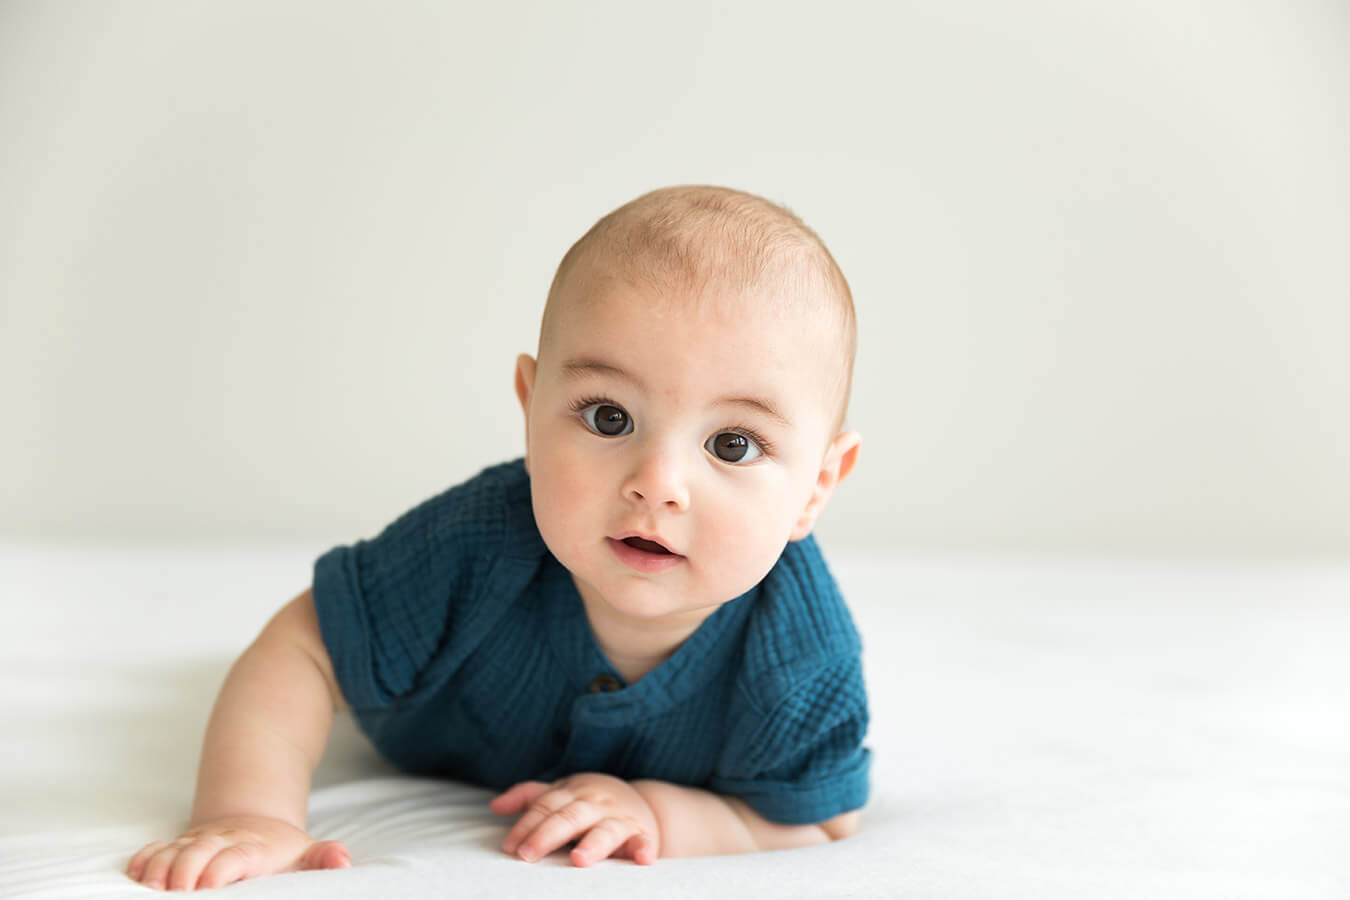 21 tygodniowe dziecko – Jak wygląda 21 tydzień życia dziecka?